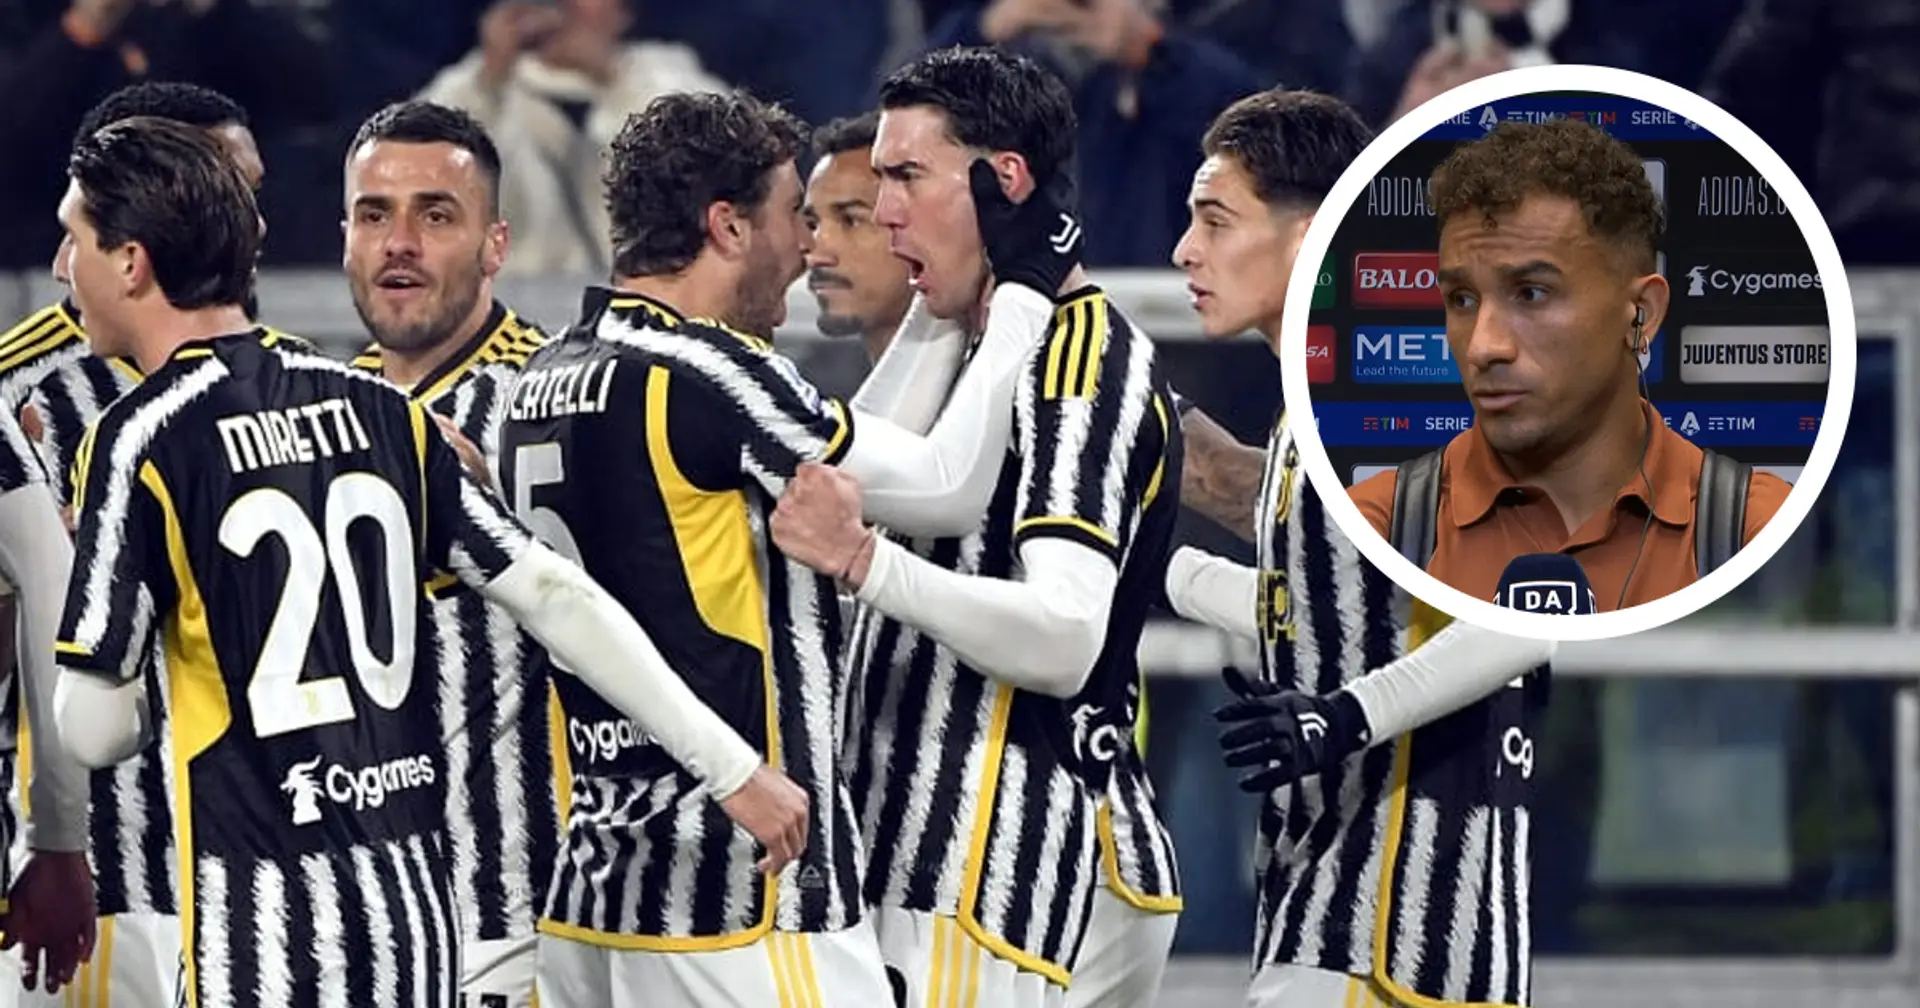 Danilo svela un retroscena sulle tattiche dei bianconeri: "Alla Juventus lo facciamo sempre, dà un impatto immediato alla partita"